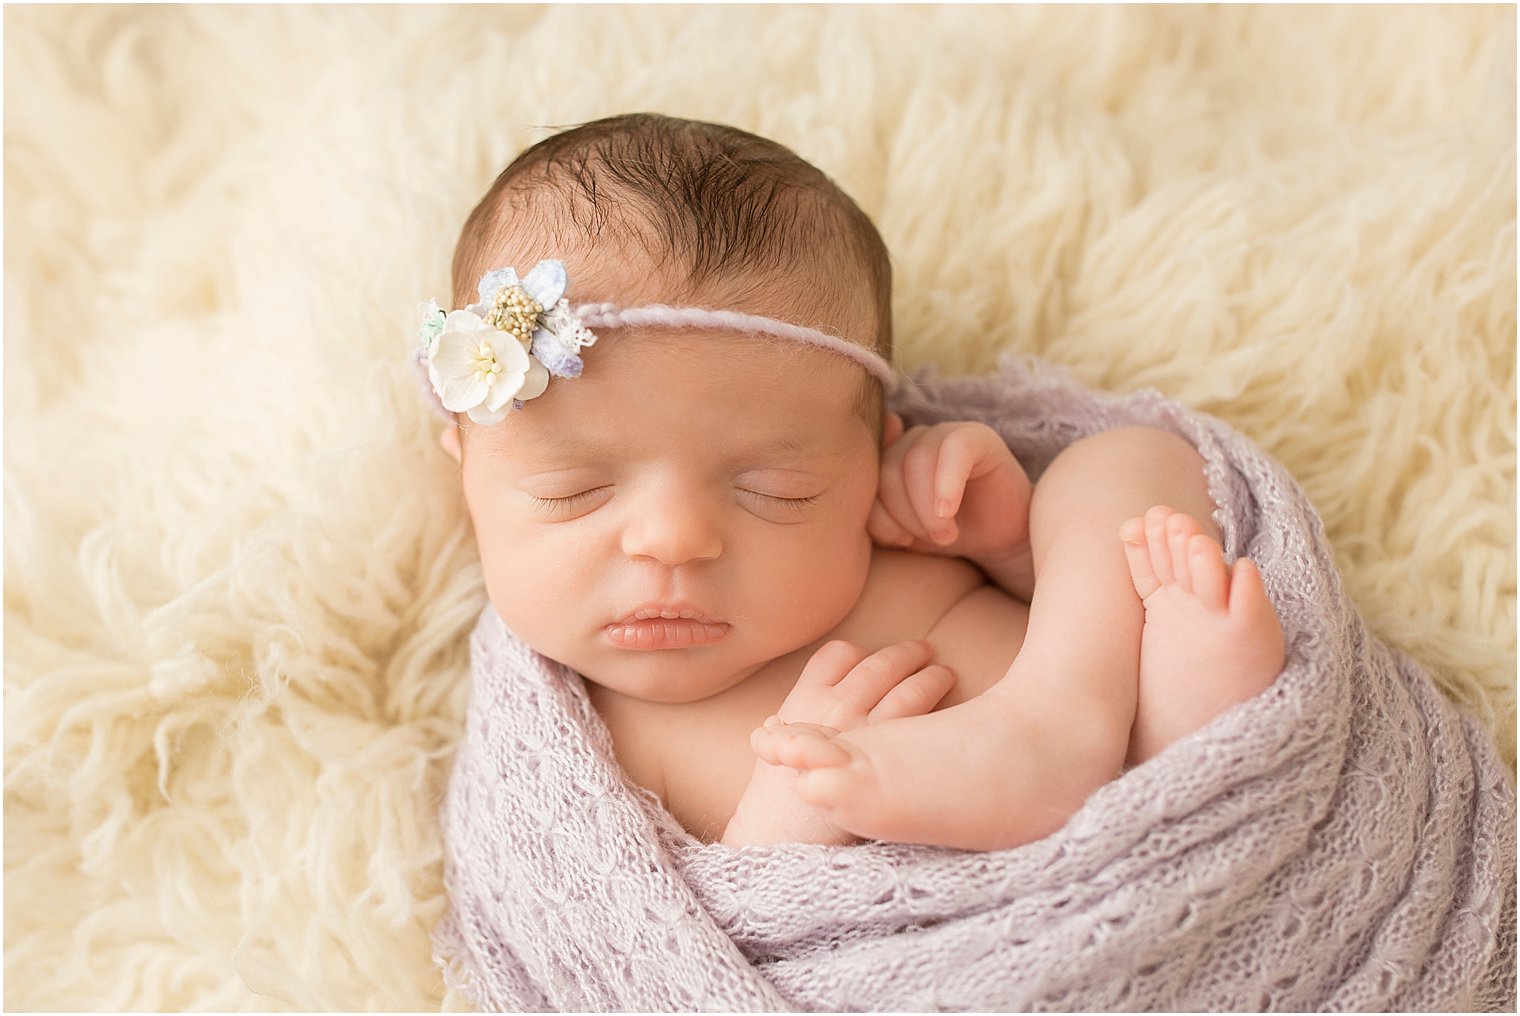 Newborn girl in lavender and cream